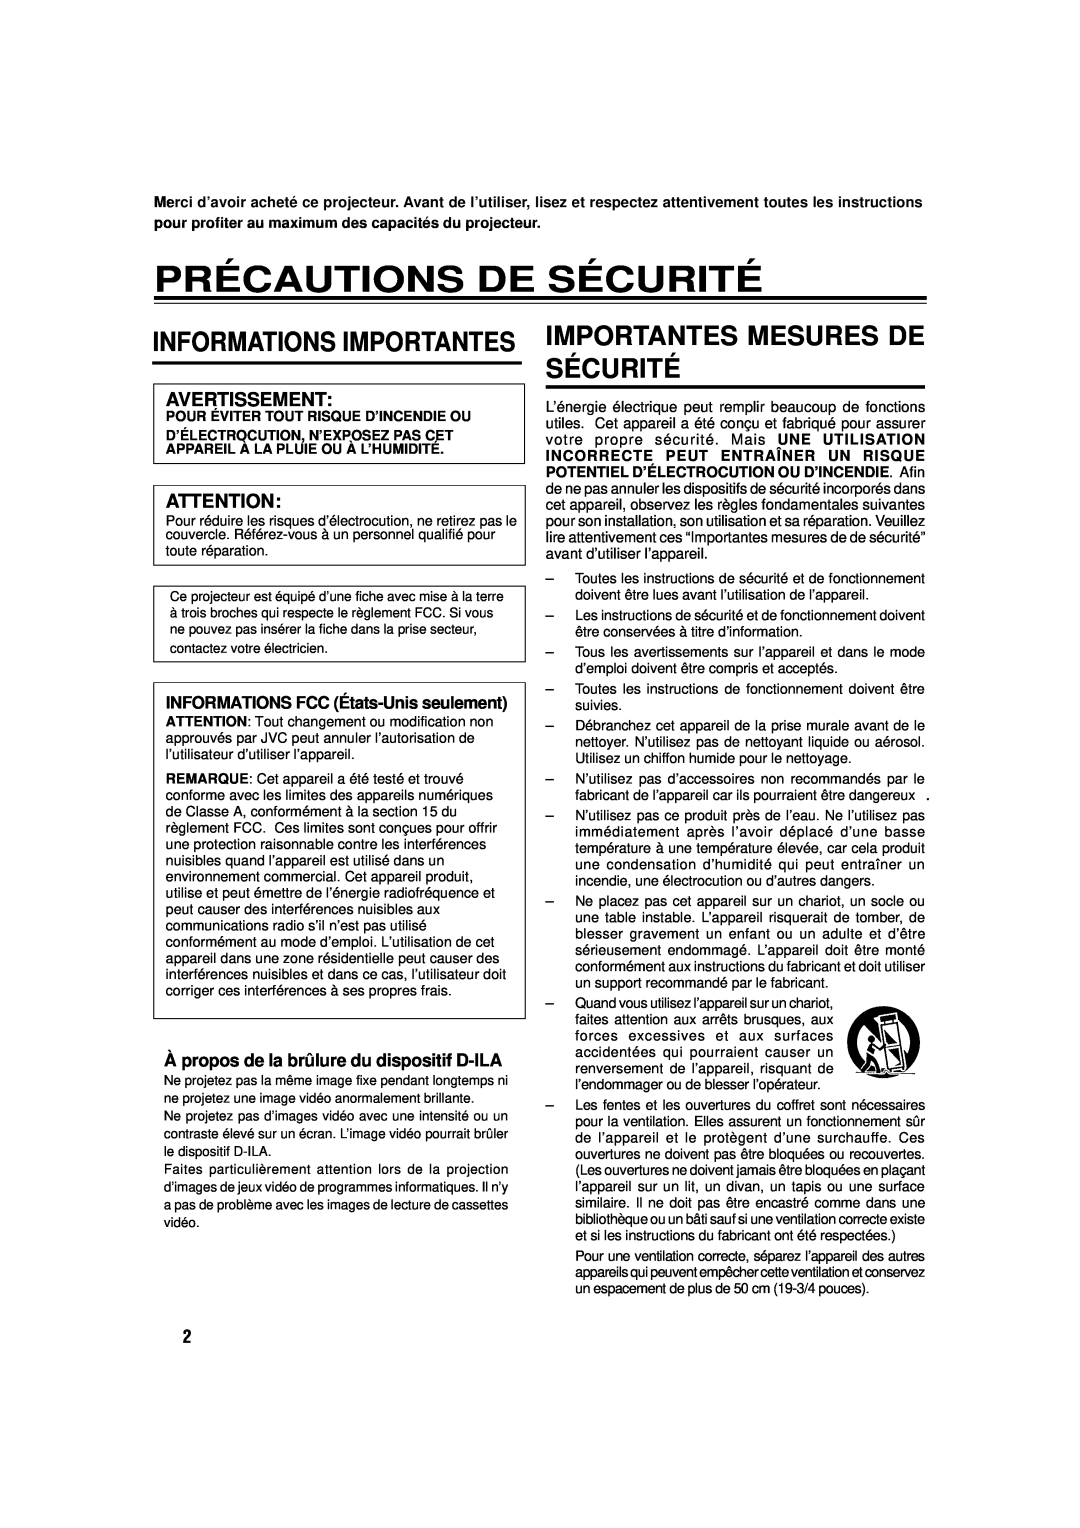 JVC DLA-M15U manual Précautions De Sécurité, Importantes Mesures De Sécurité, Informations Importantes 